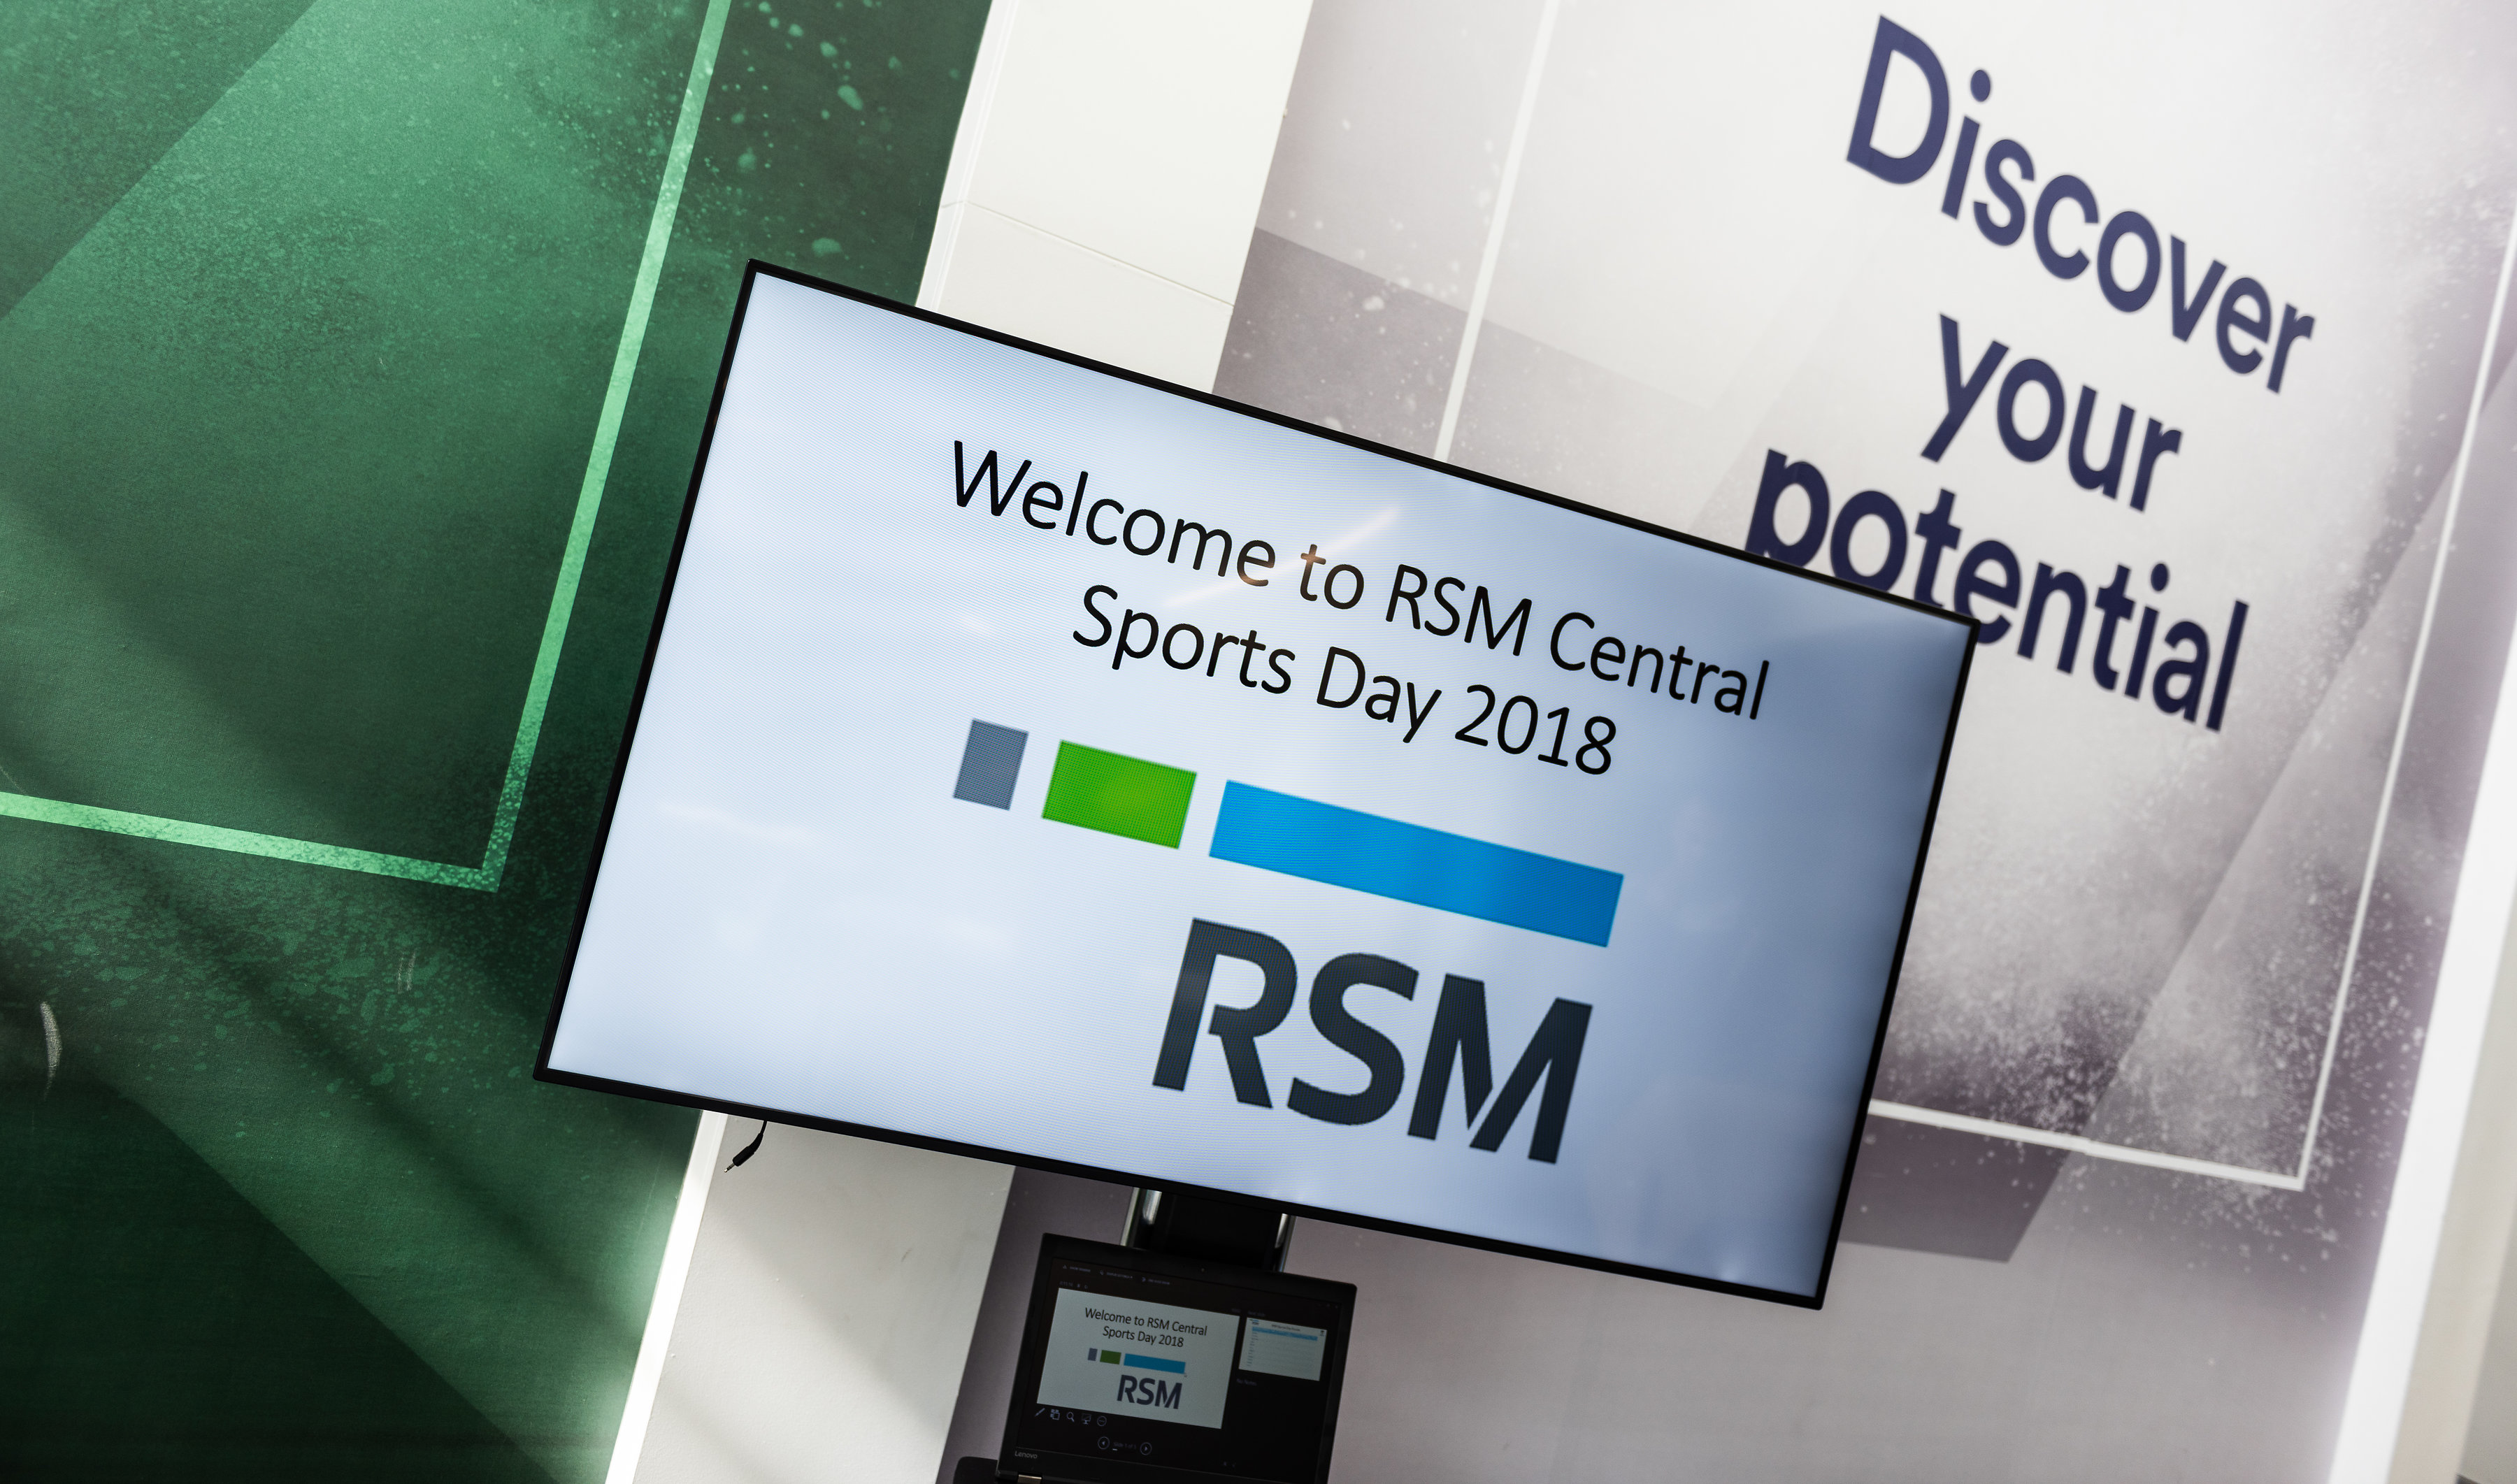 RSM Sports Day 2018